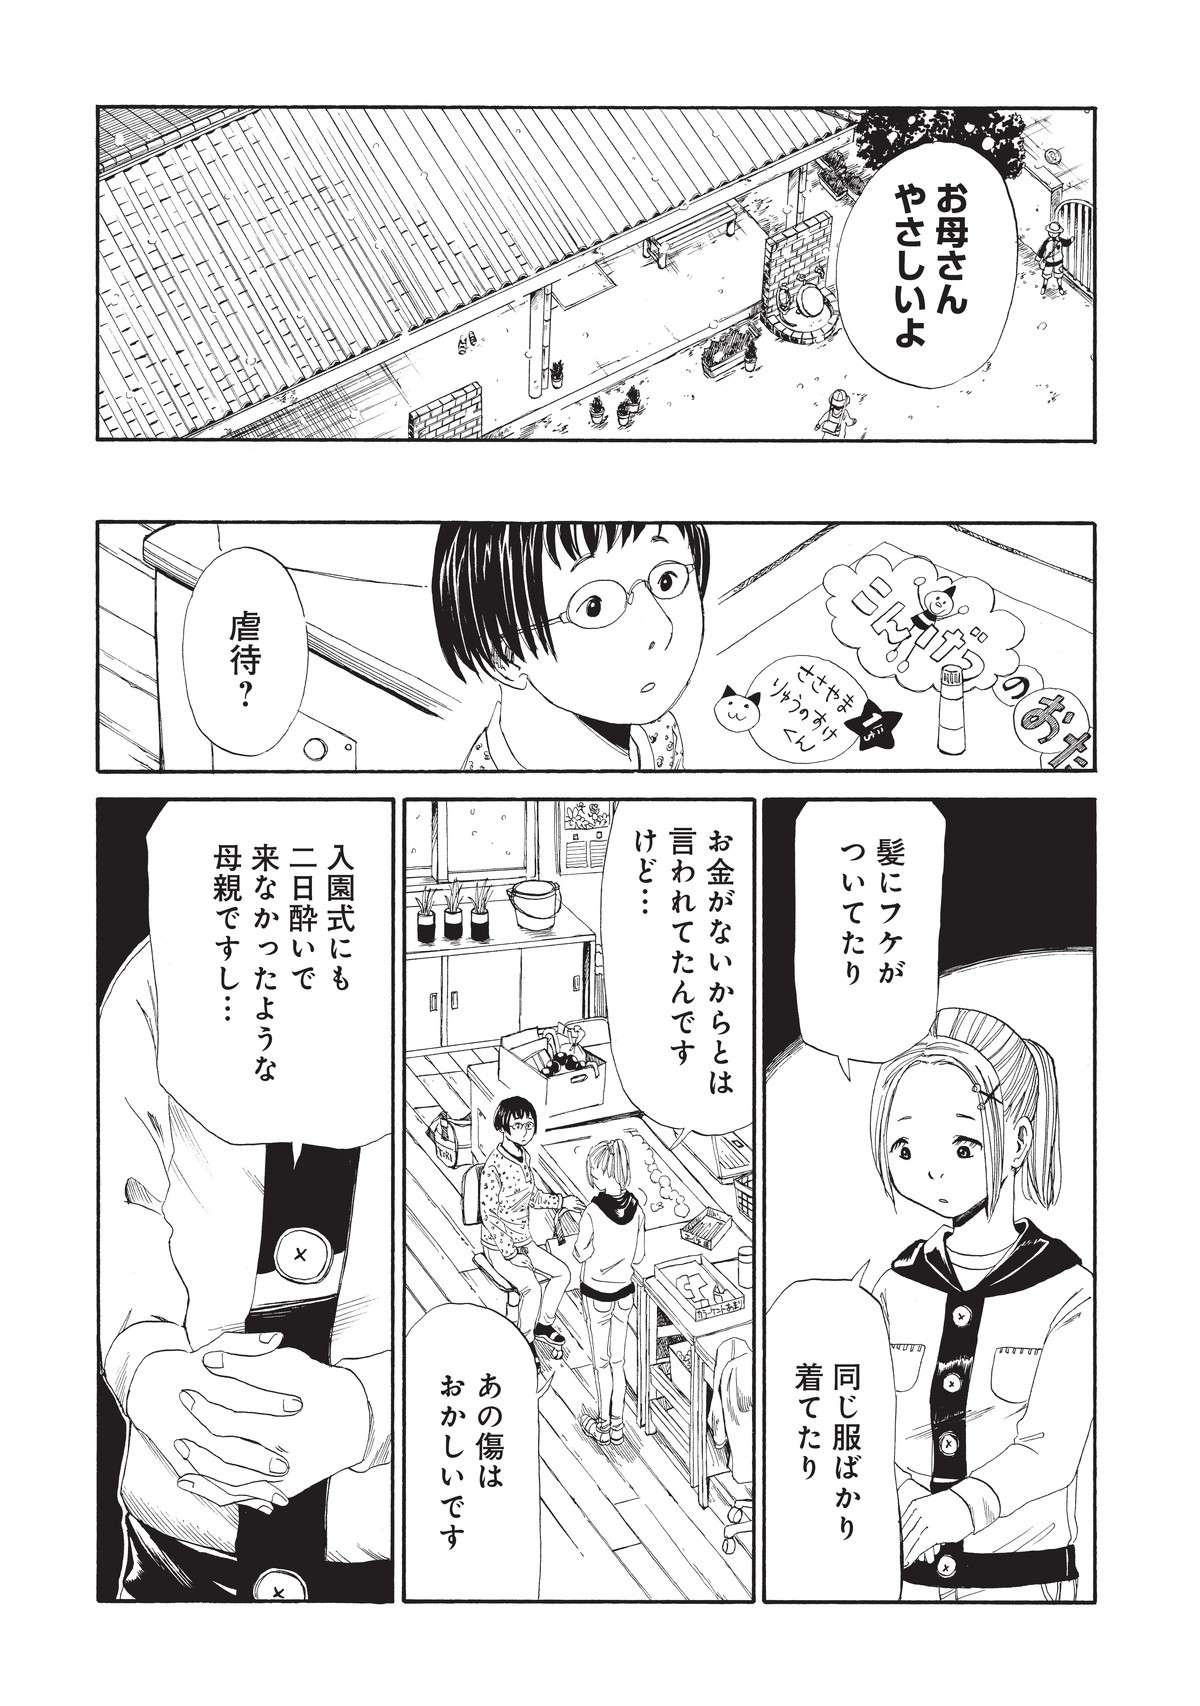 「うるさいっ！」ゴミだらけの部屋で寝ていた母親は、声を出して本を読む娘に激高し...／死役所  shiyakusho3_12.jpg